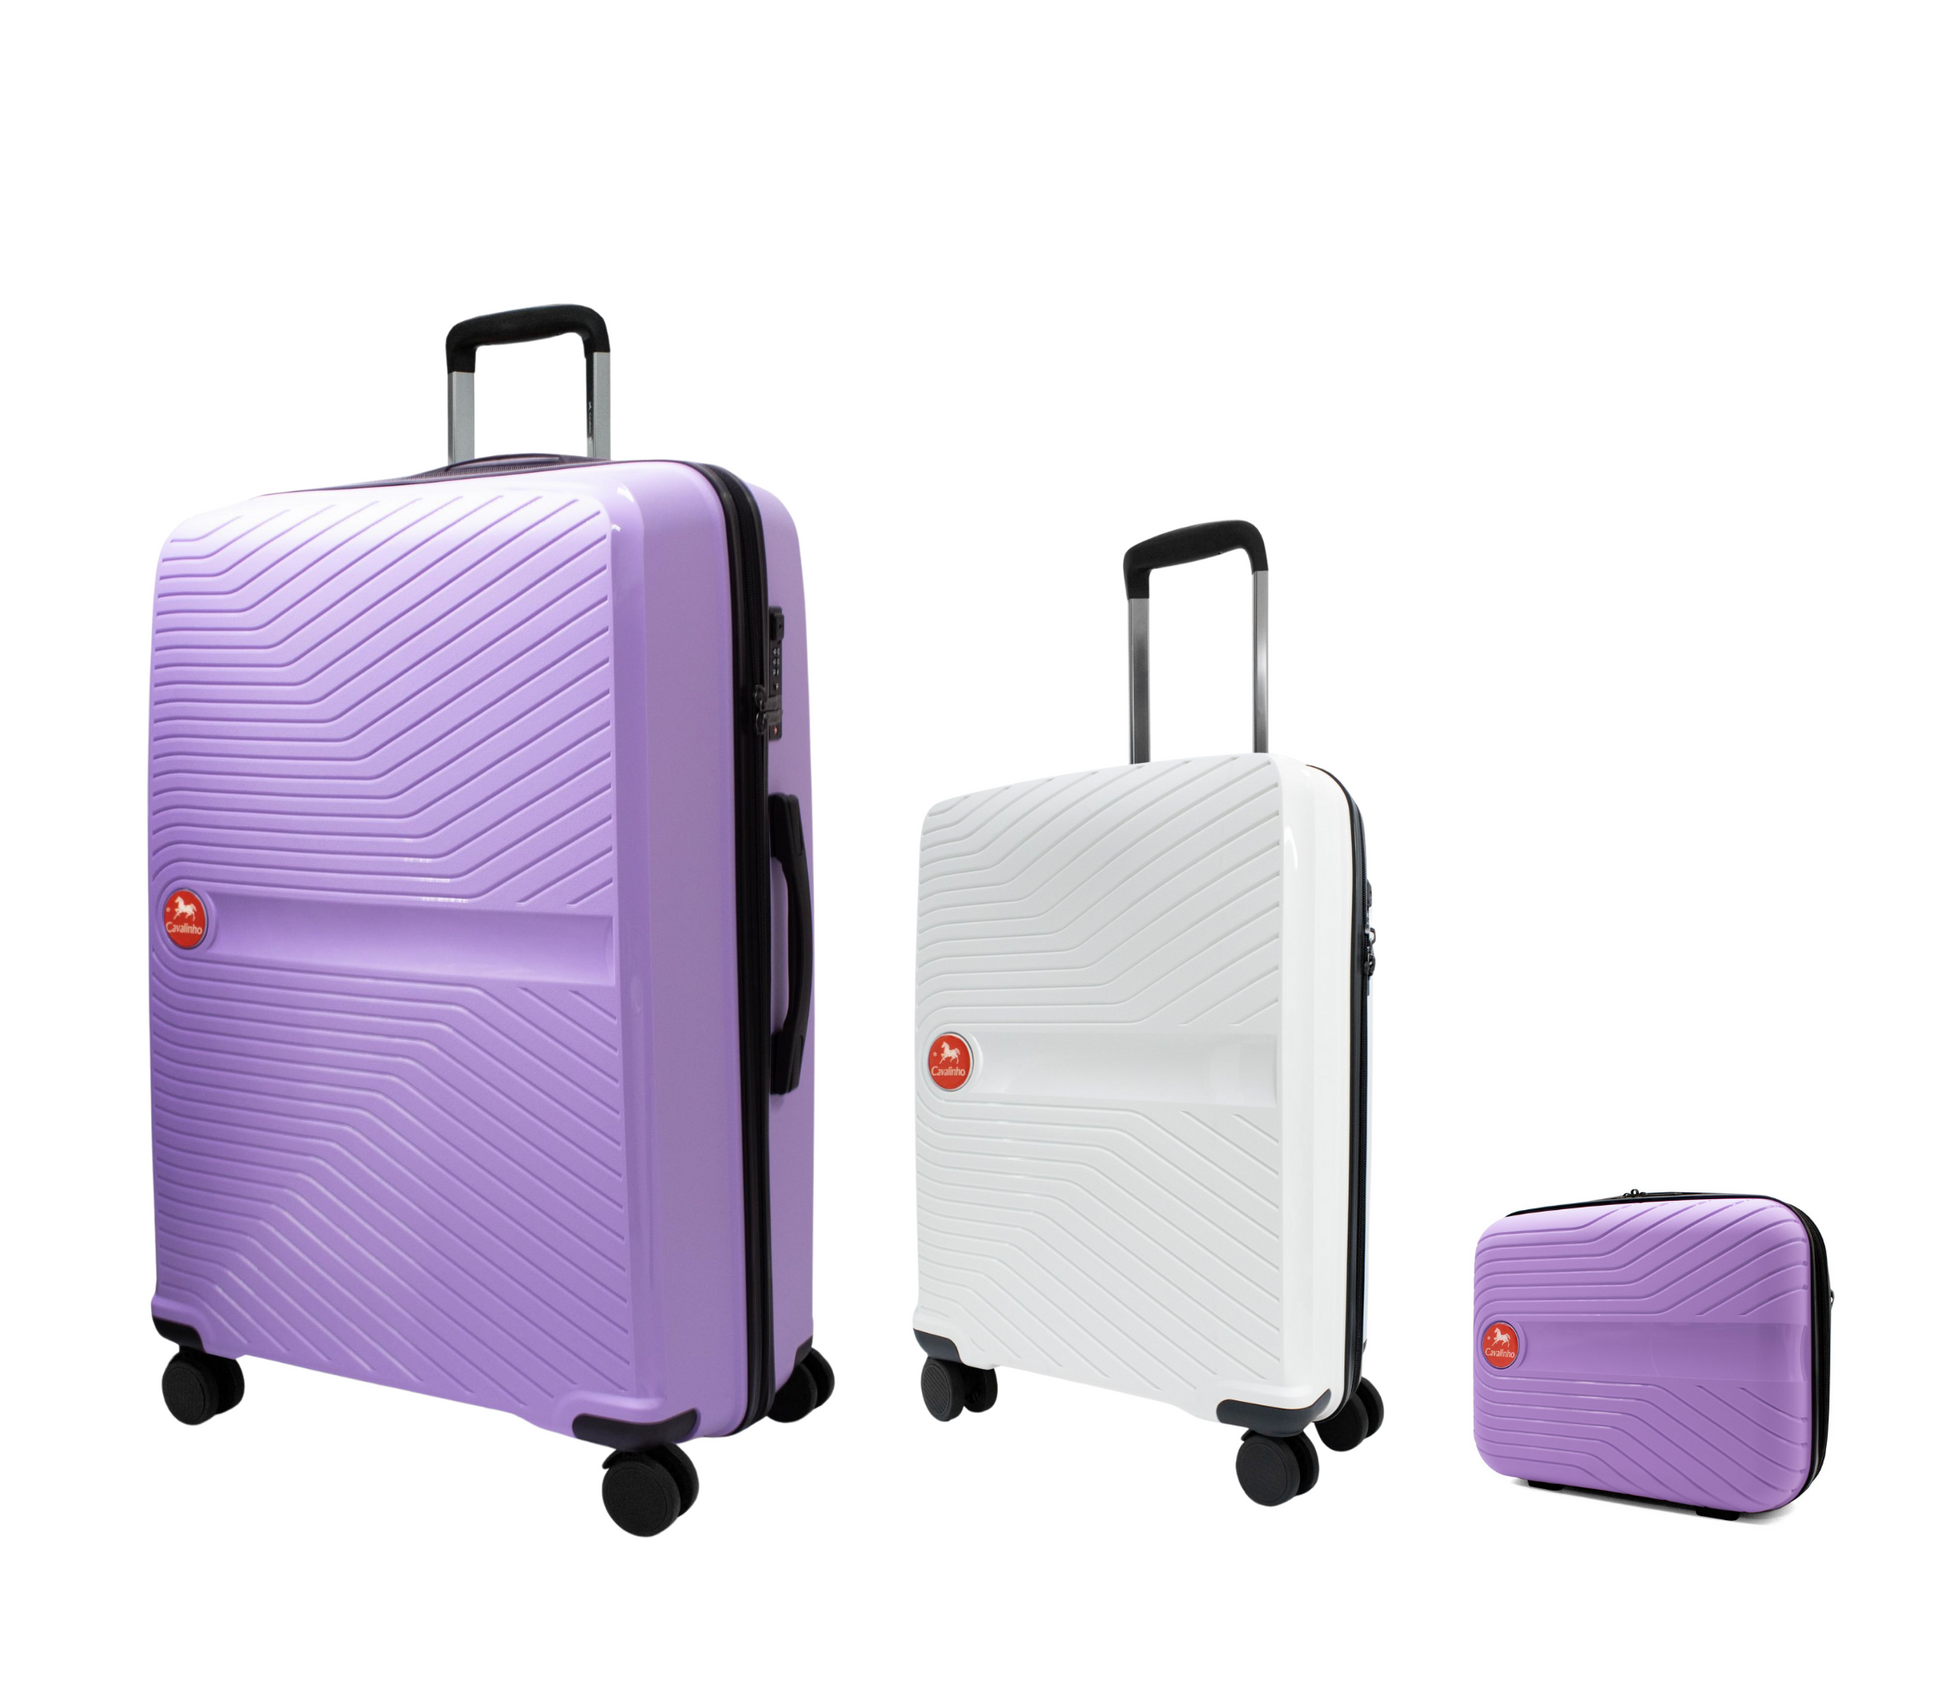 #color_ Lilac White Lilac | Cavalinho Canada & USA Colorful 3 Piece Luggage Set (15", 19" & 28") - Lilac White Lilac - 68020004.390639.S151928._2